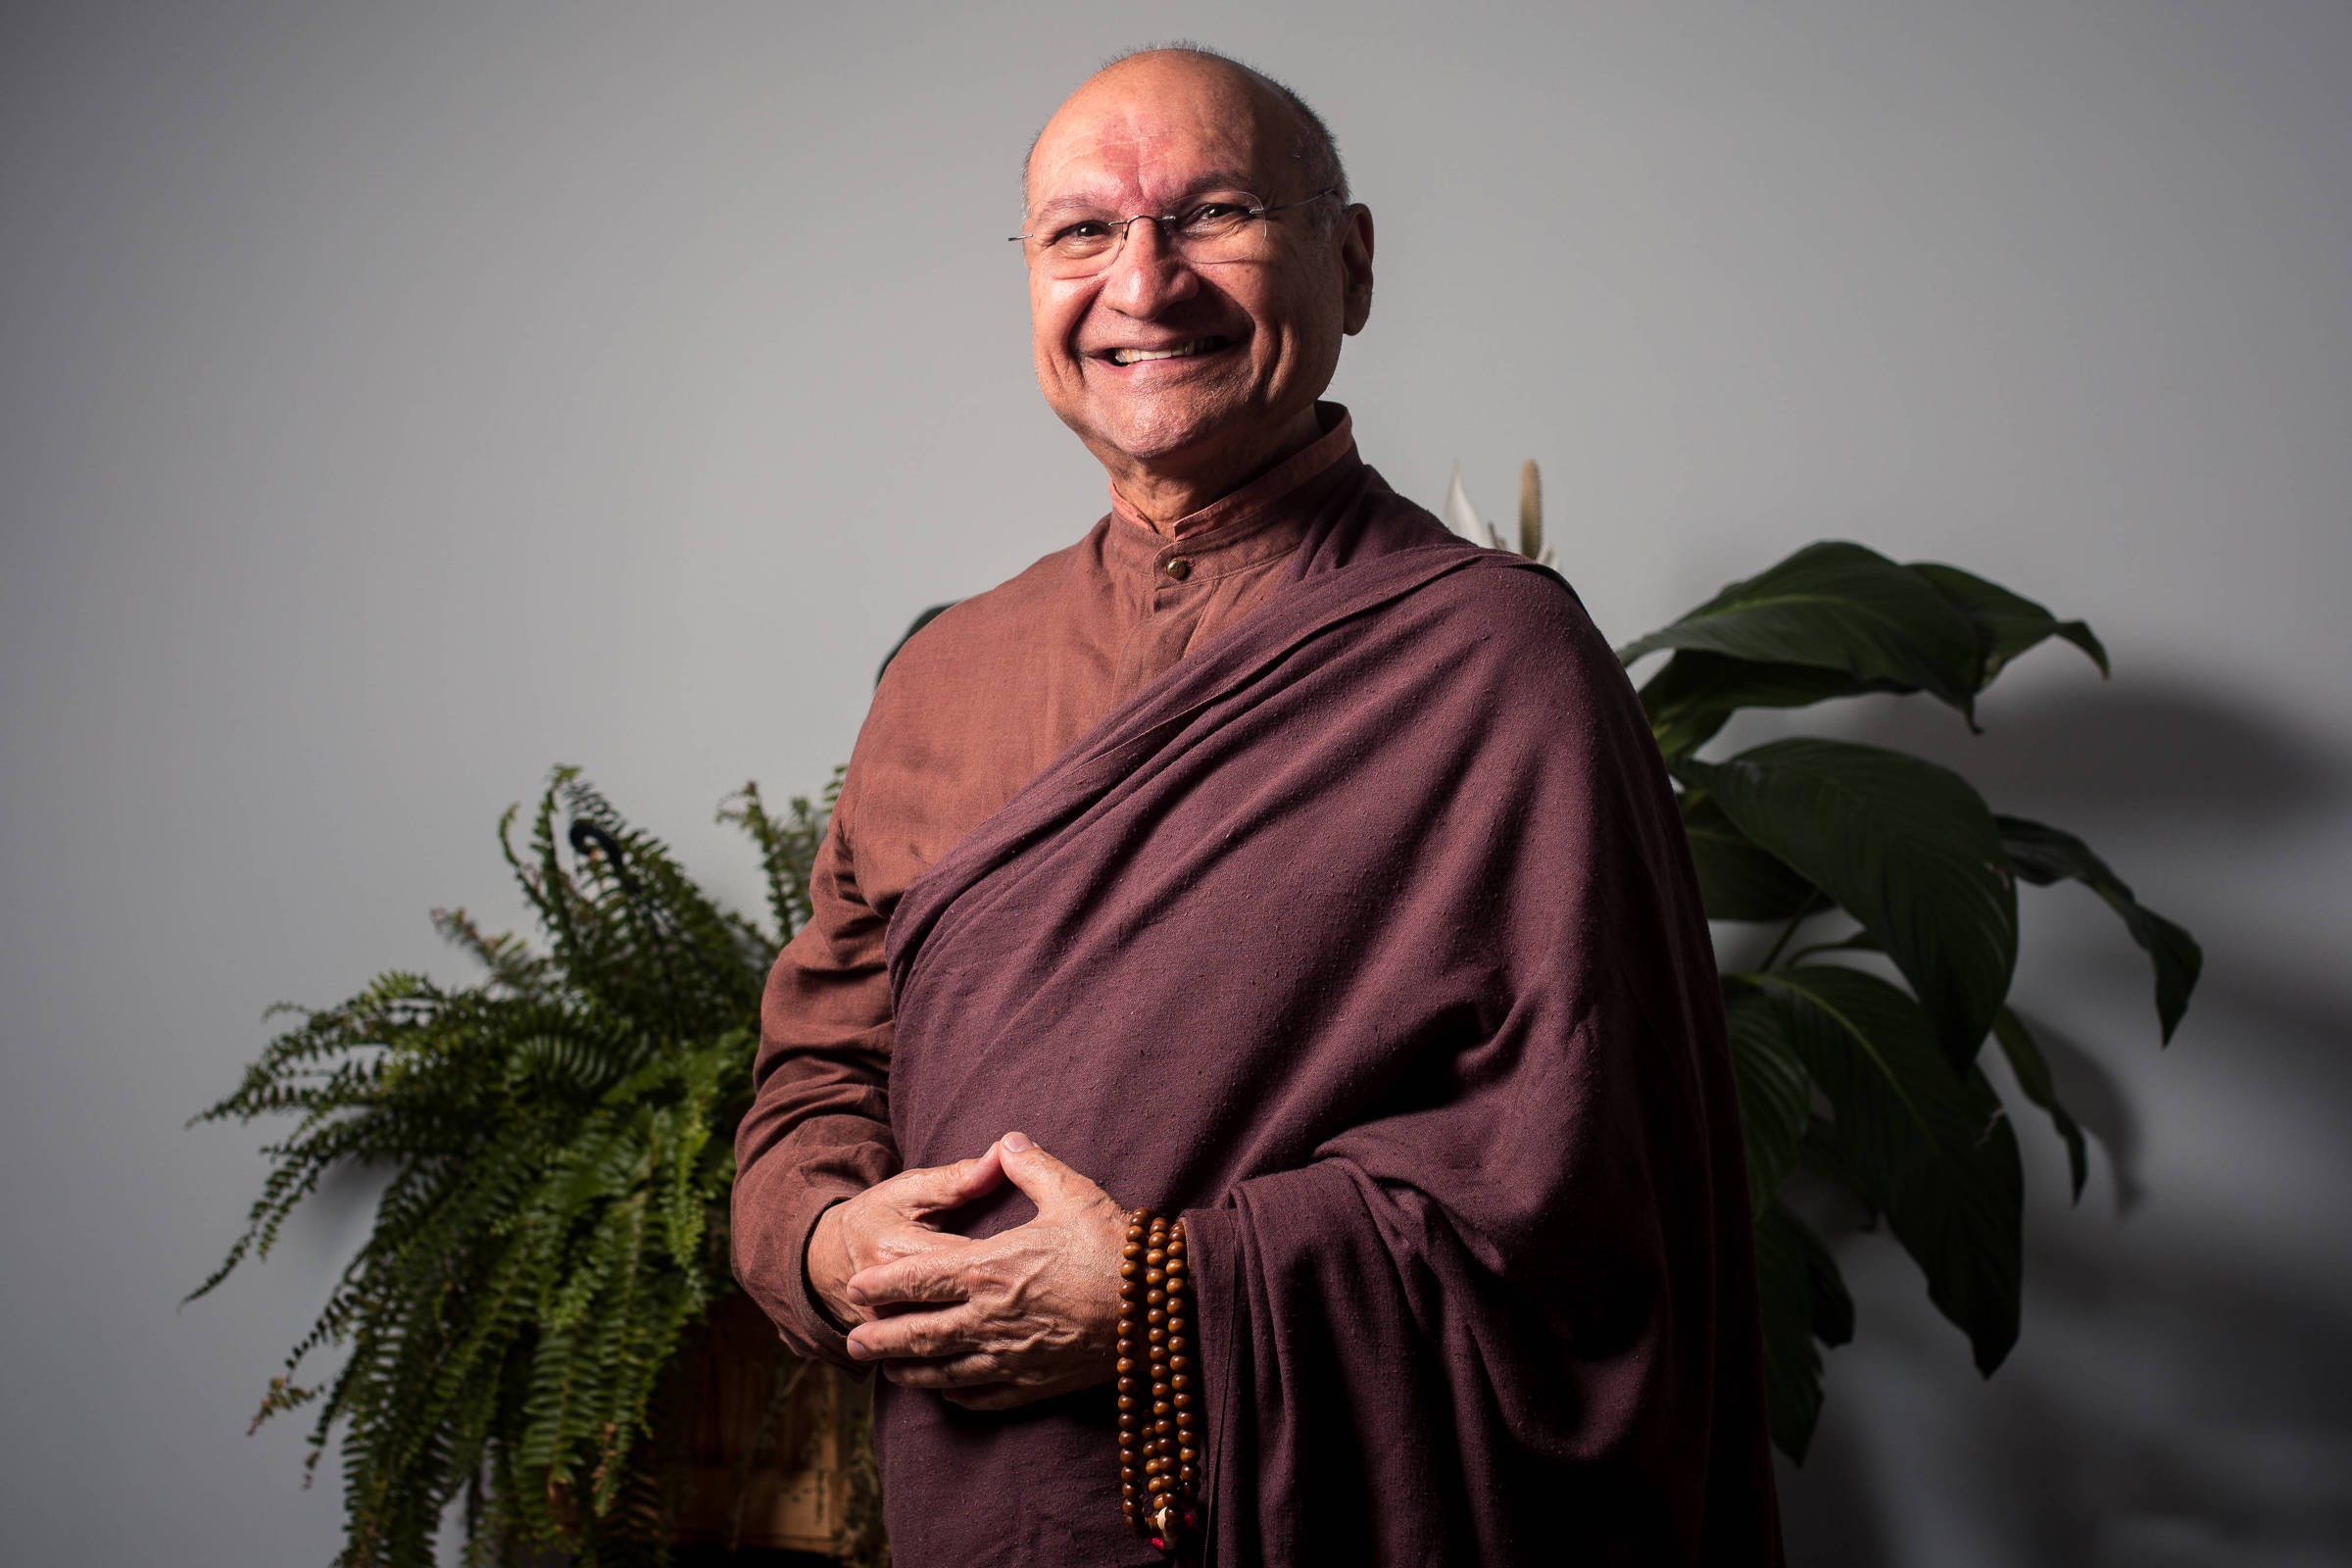 O monge budista brasileiro Choepel Rinpoche, que vive nos EUA, participa de evento sobre o cérebro, em que fala de meditação e neurociência